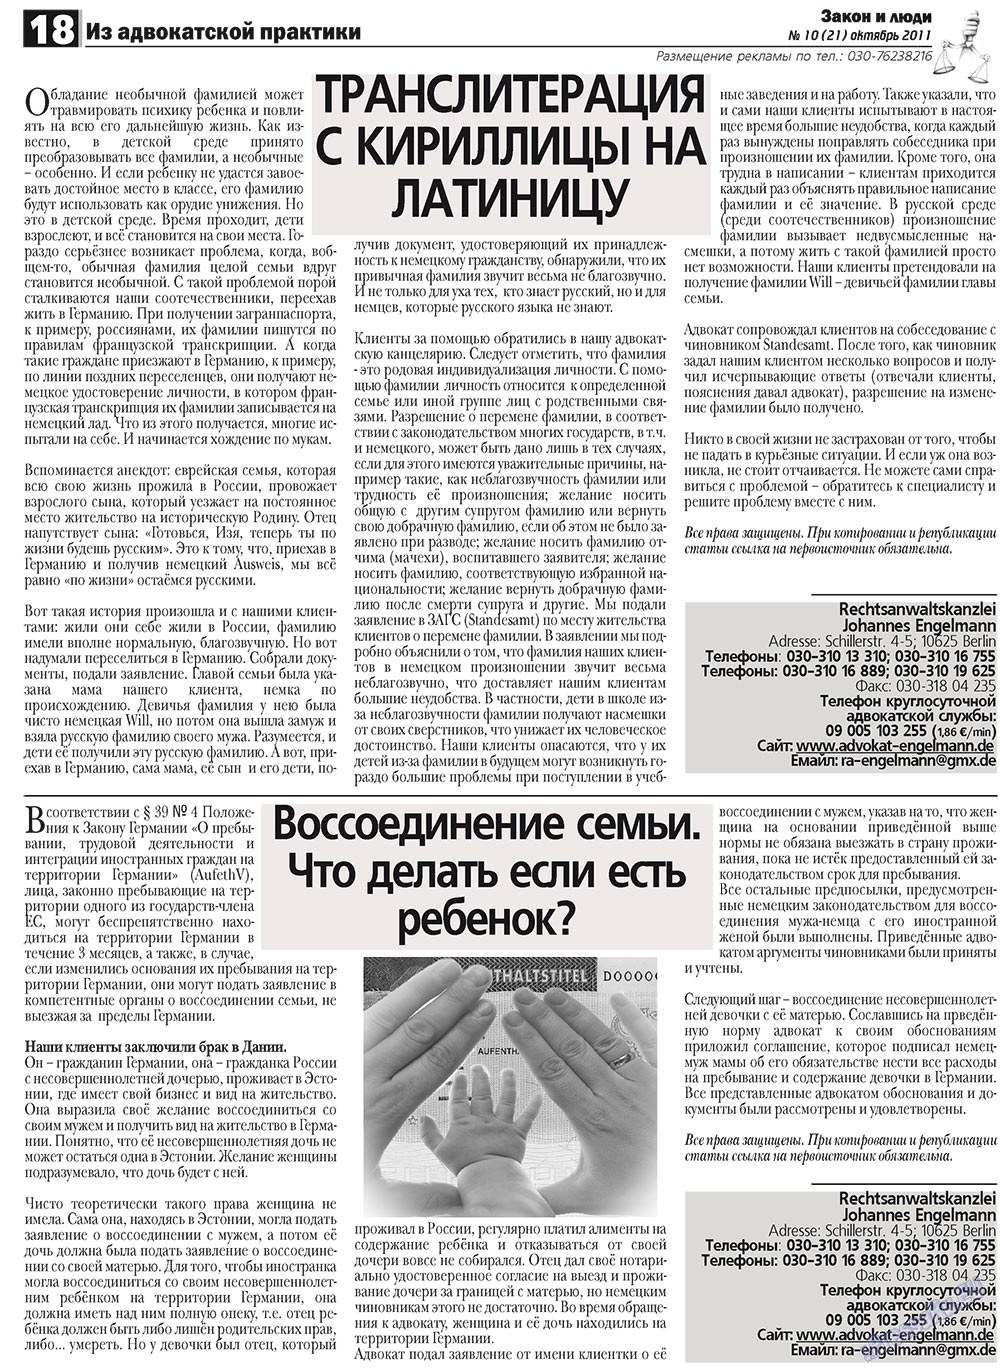 Закон и люди (газета). 2011 год, номер 10, стр. 18